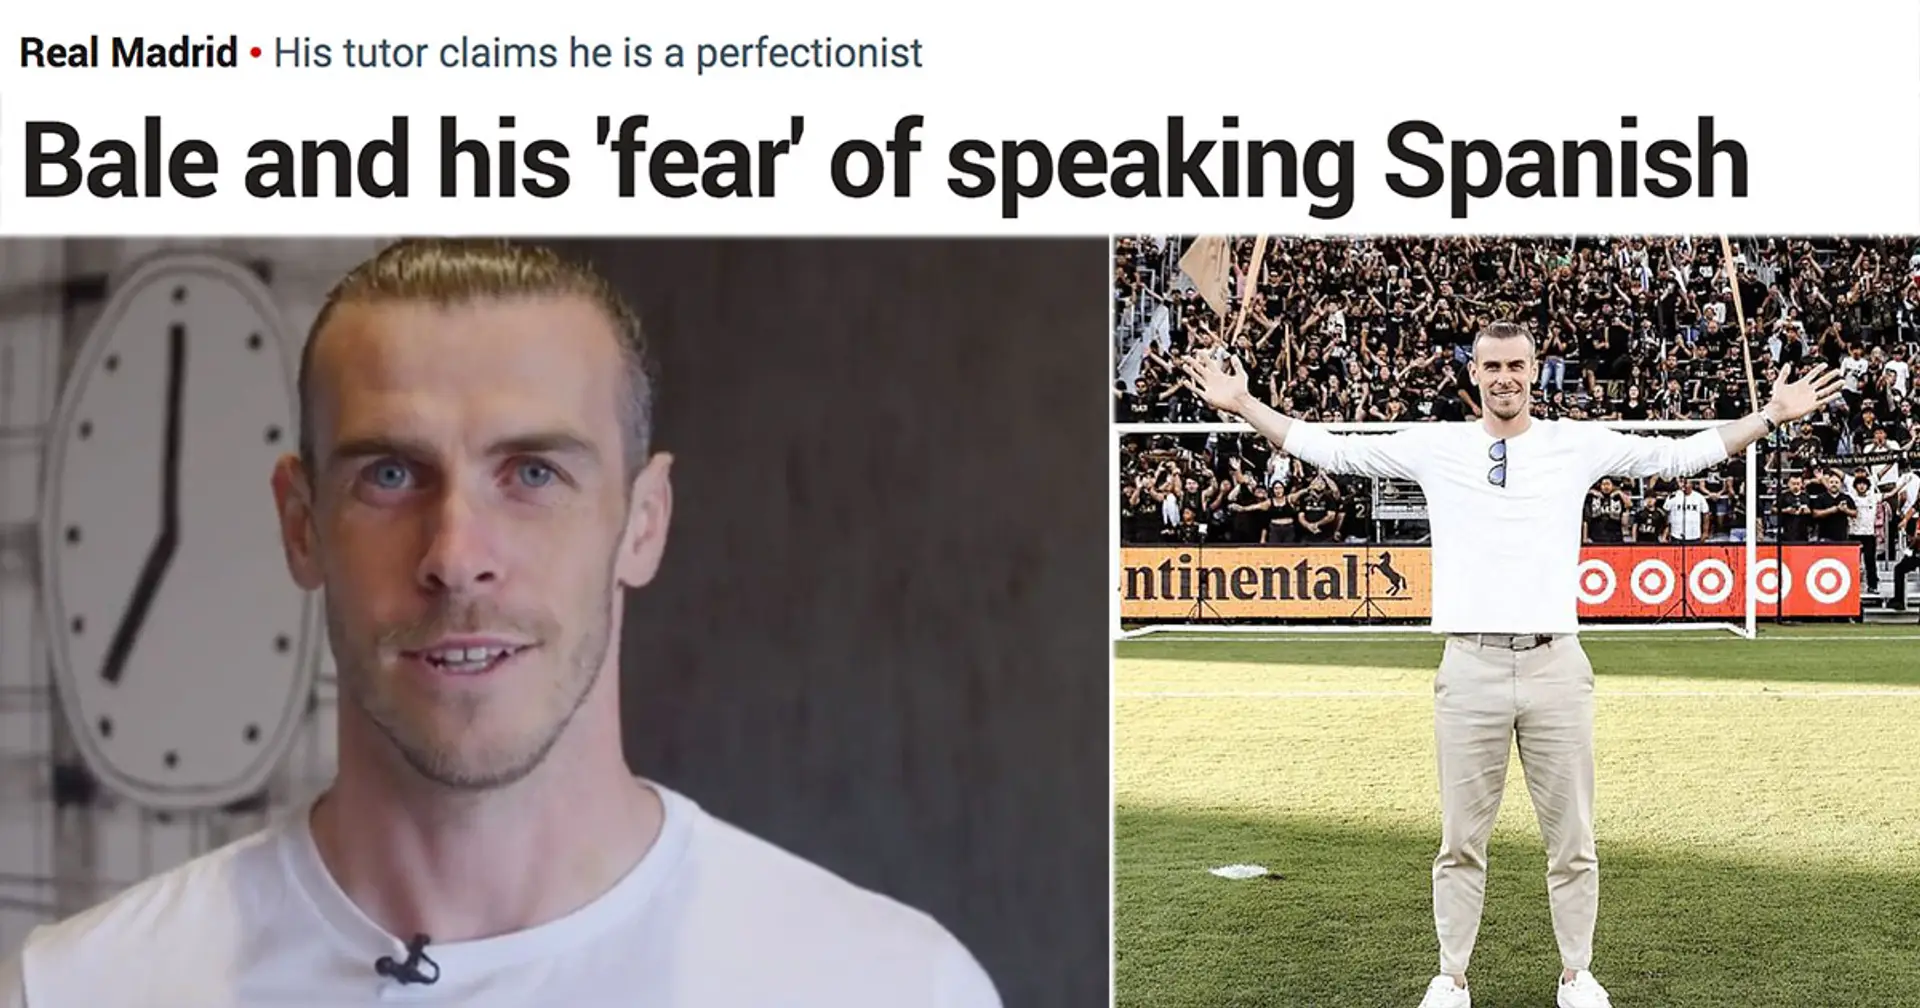 "Fantastique troll": Bale parle parfaitement l'espagnol pour la vidéo LAFC